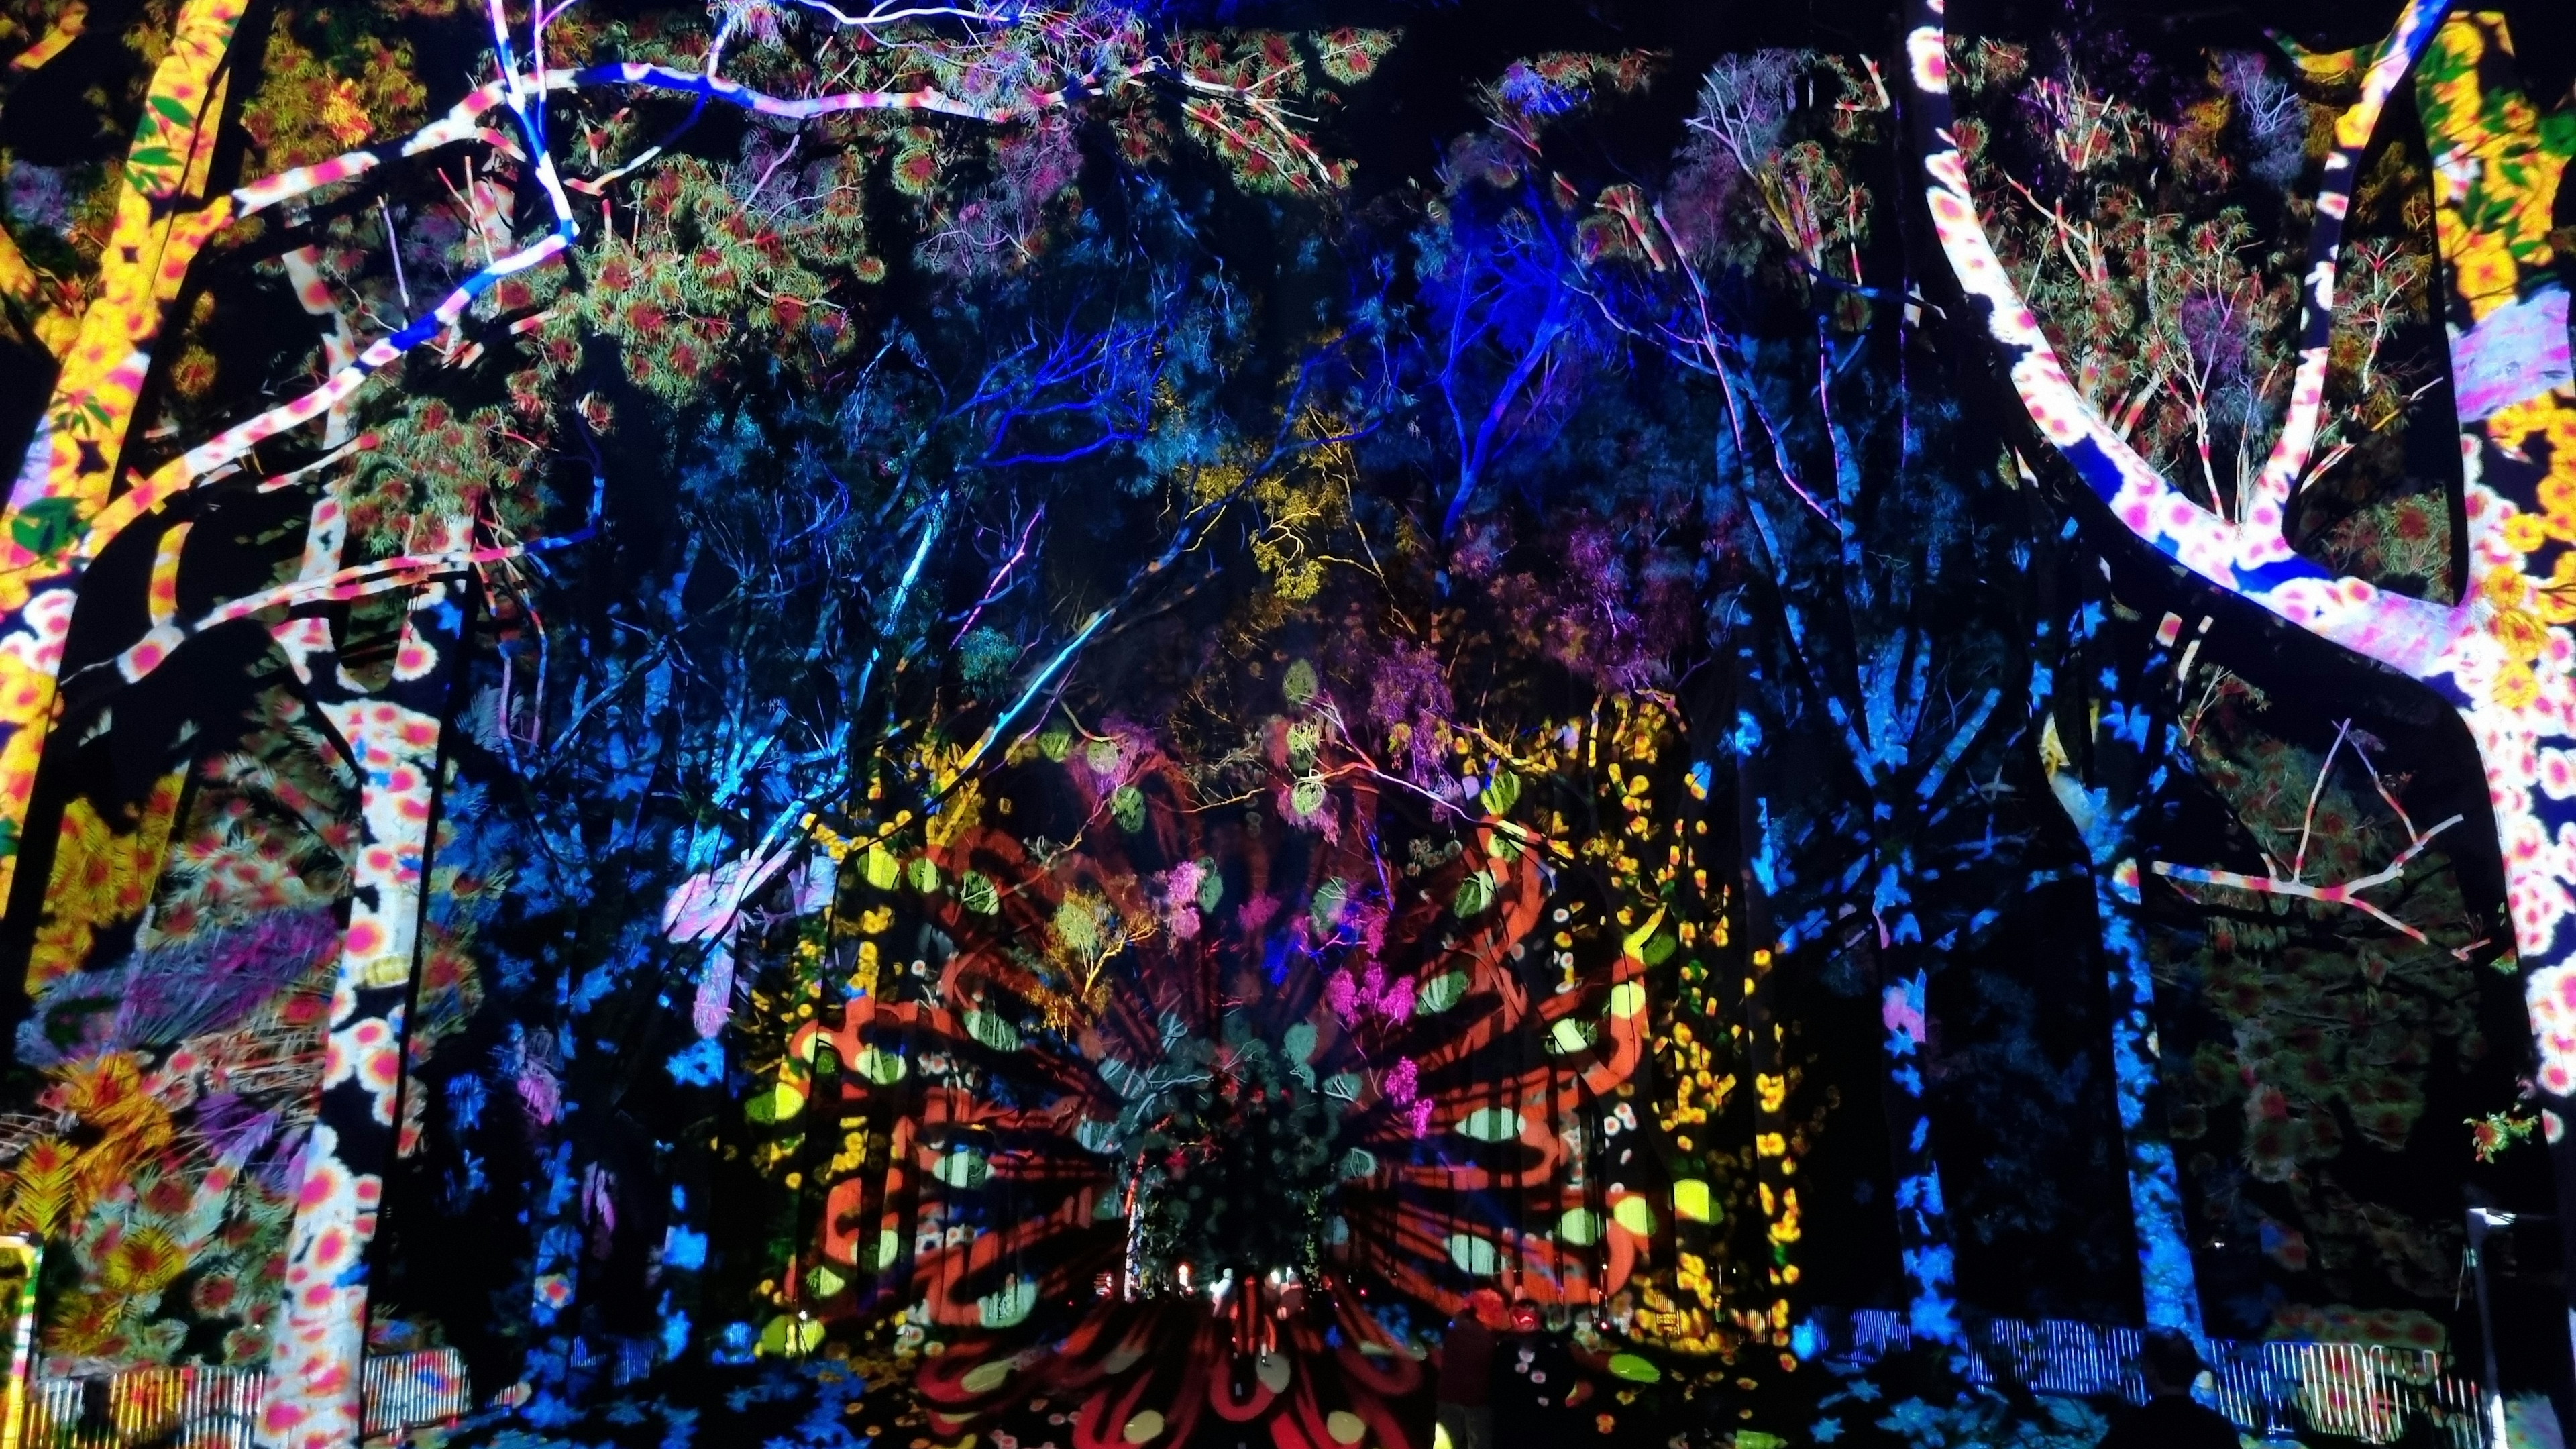 Projection Magic Illuminates Boorna Waanginy: The Trees Speak